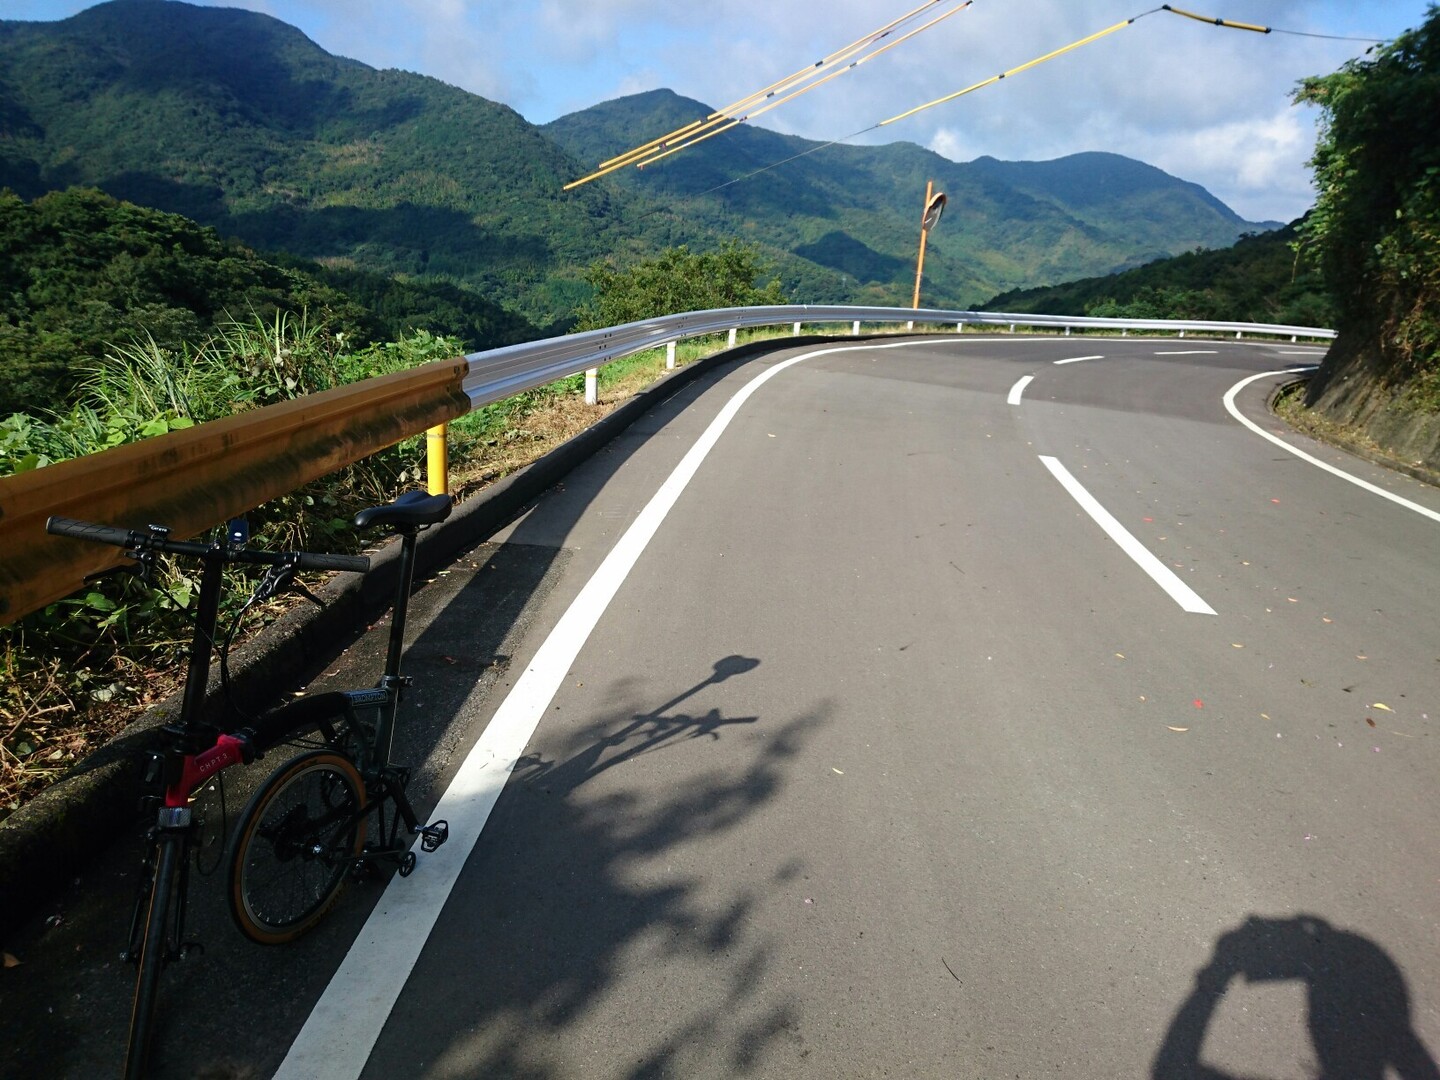 周防大島オレンジロードを初めて走った 周防大島の写真7枚目 ここのカーブは 山口県道定番のオレンジ色 Yamap ヤマップ